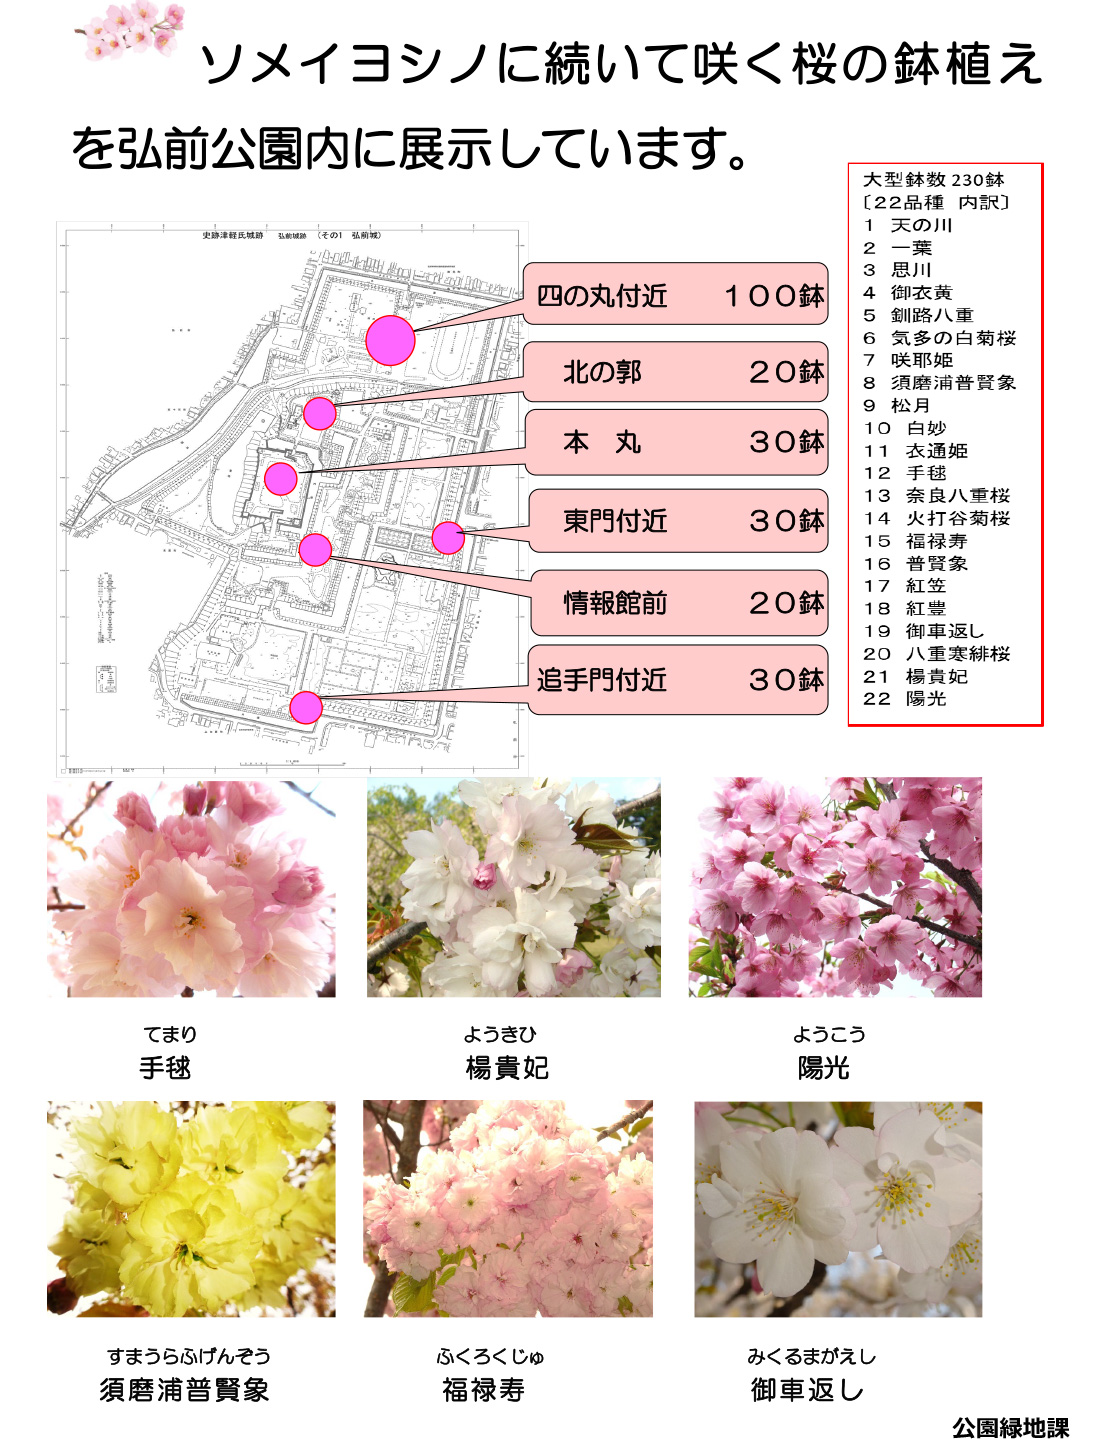 今、あなたに見てほしい弘前公園の桜7選、「弘前七桜」